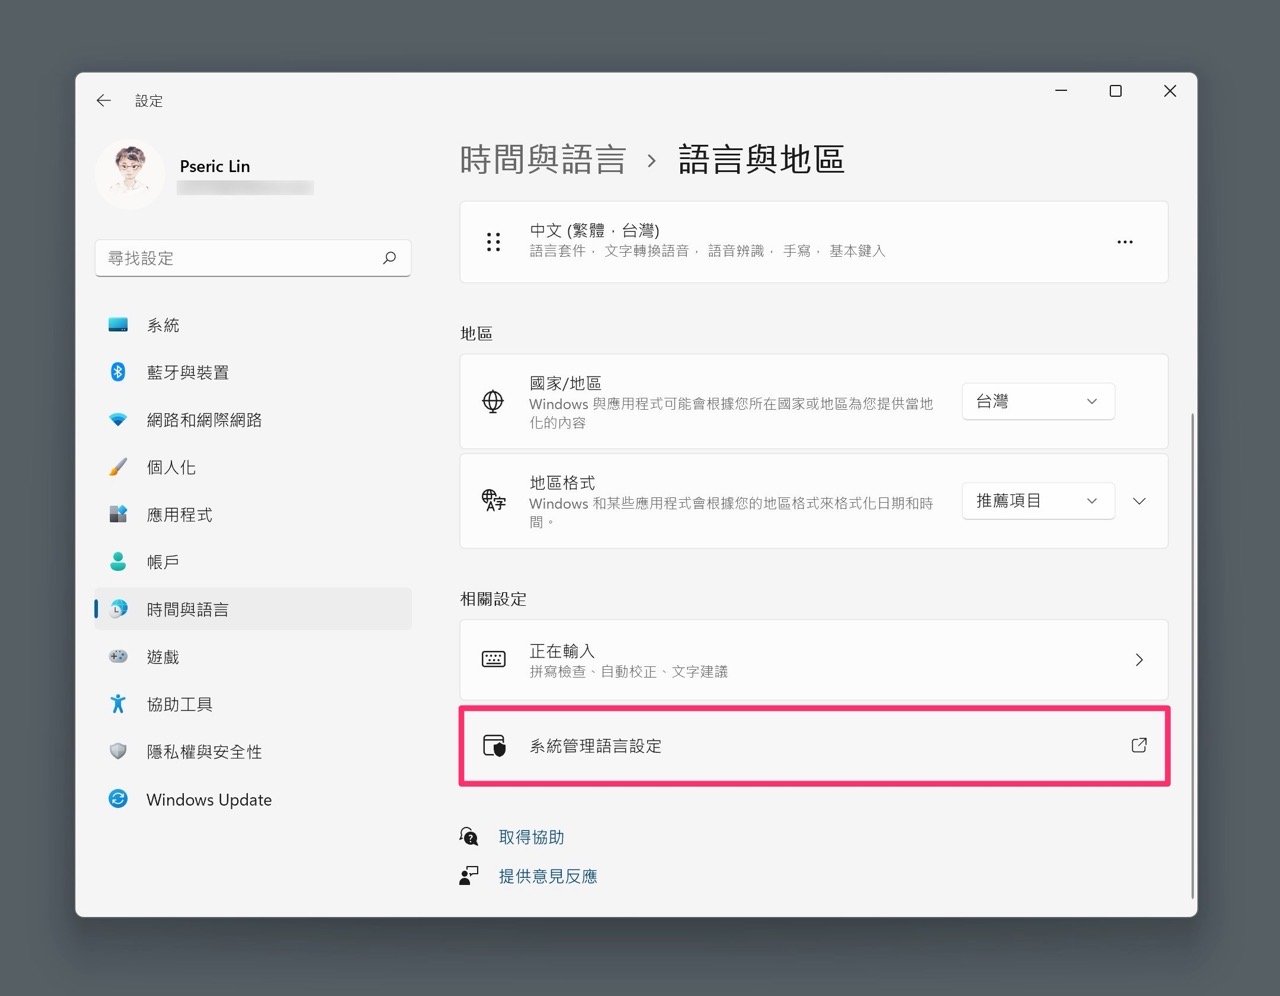 解决Windows 11 安装简体中文或非Unicode 程式出现的乱码问题